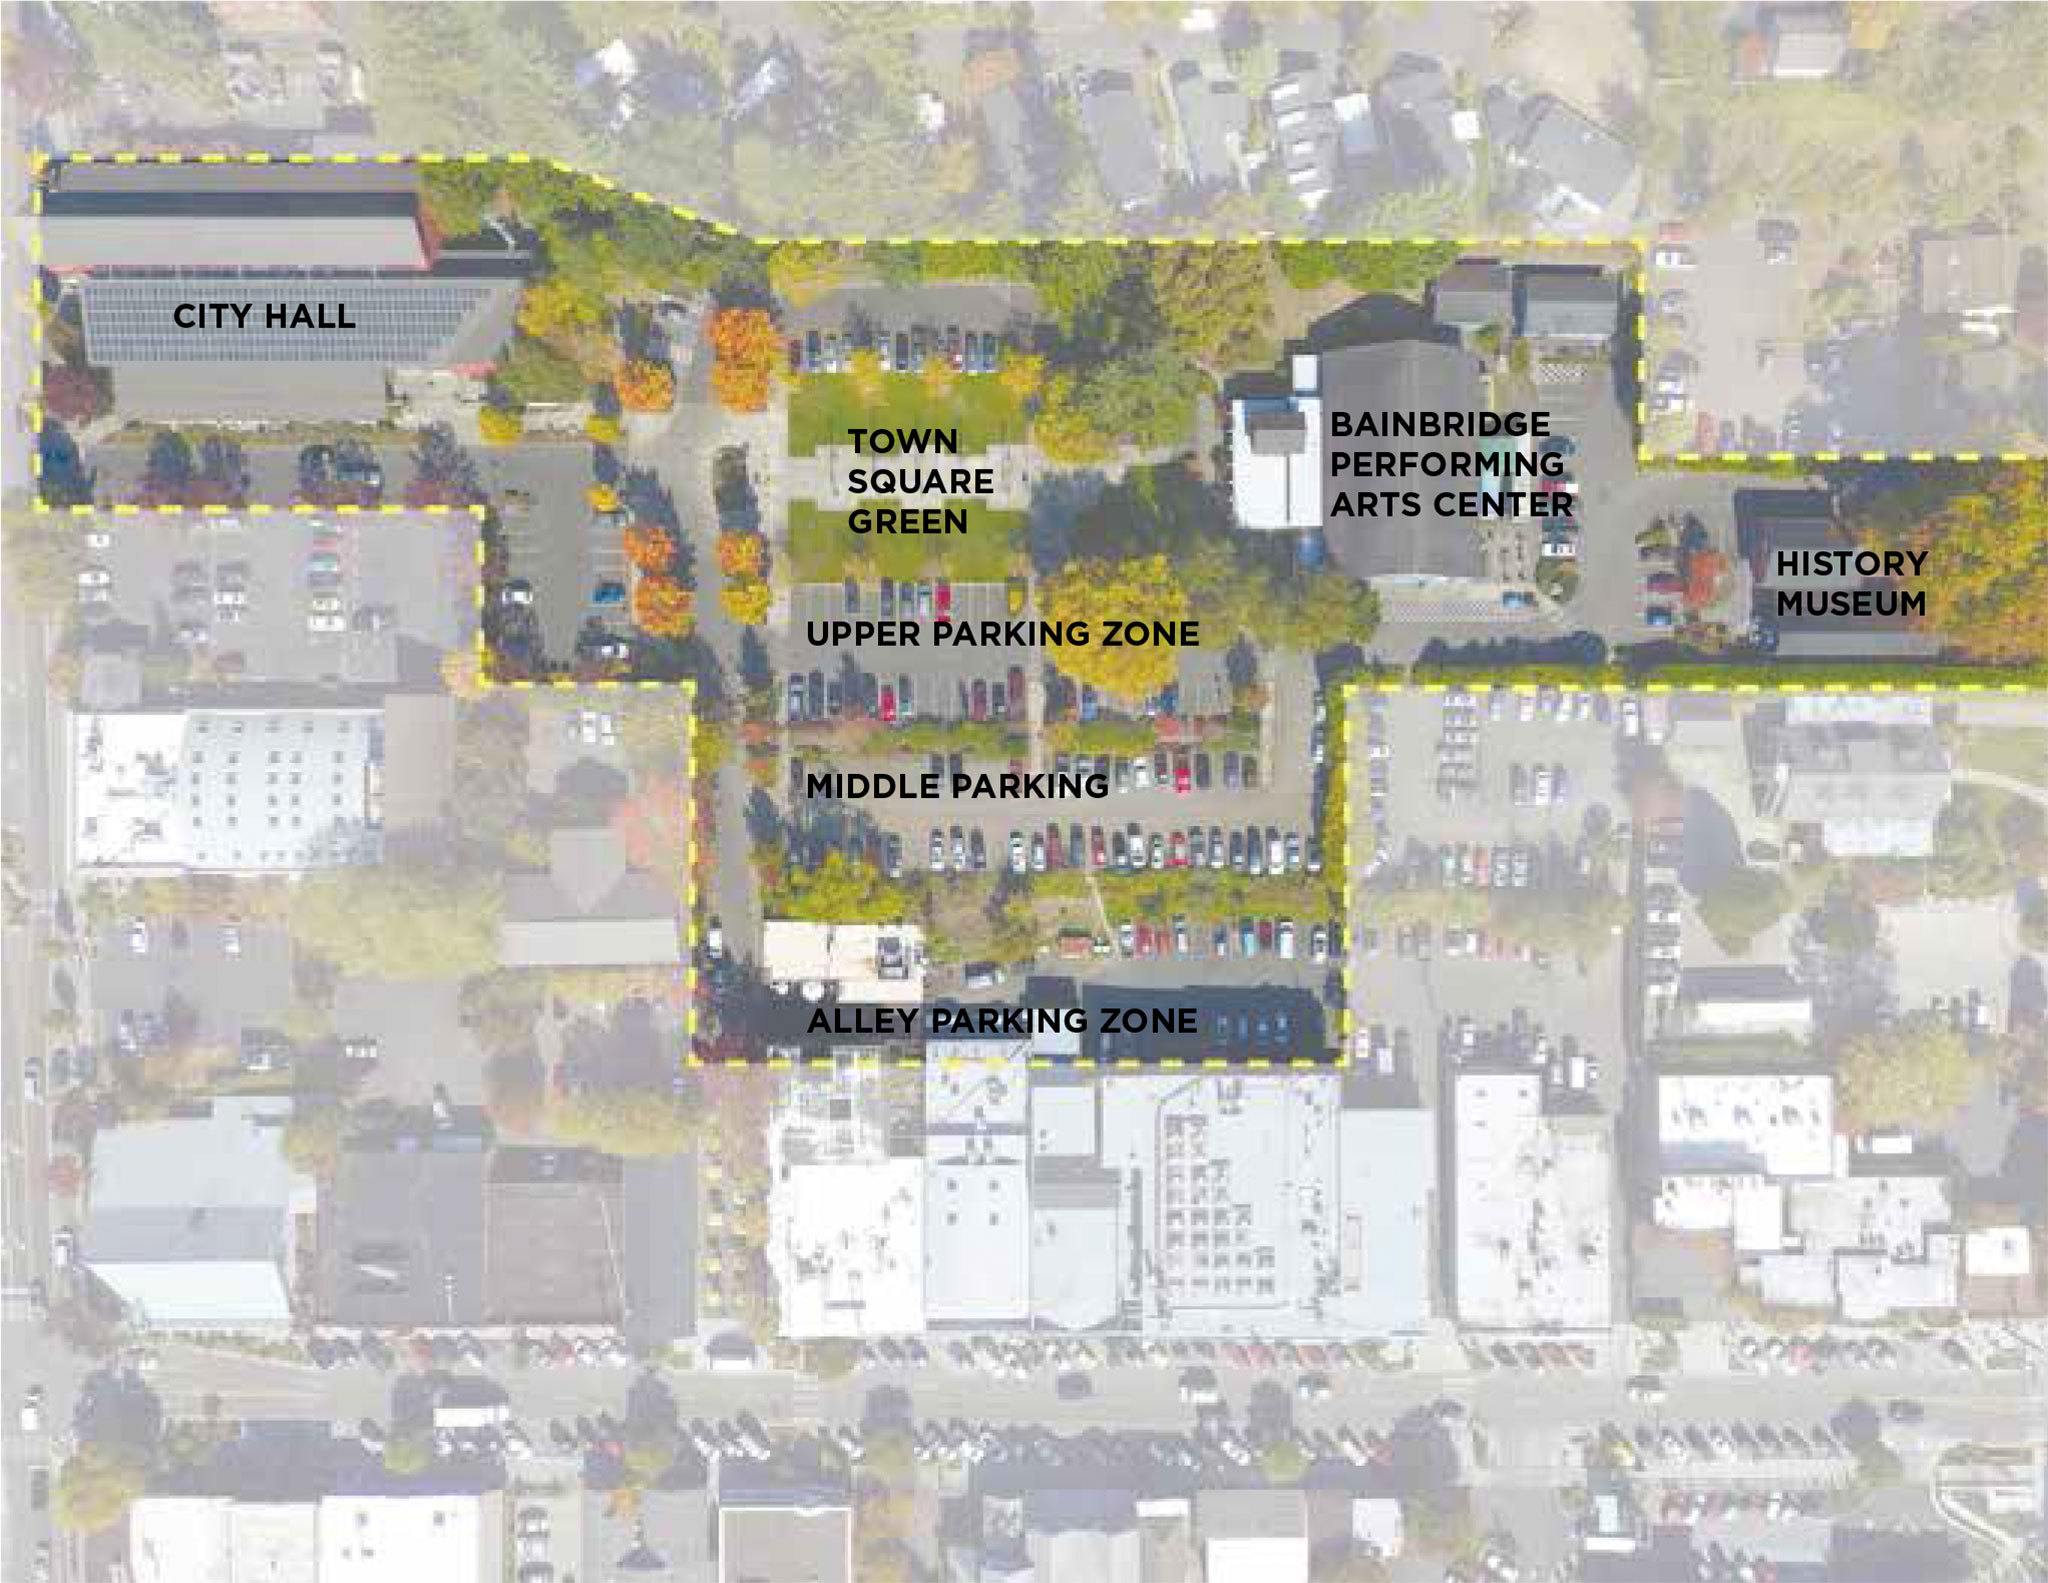 Bainbridge officials consider plan to build underground parking garage near city hall